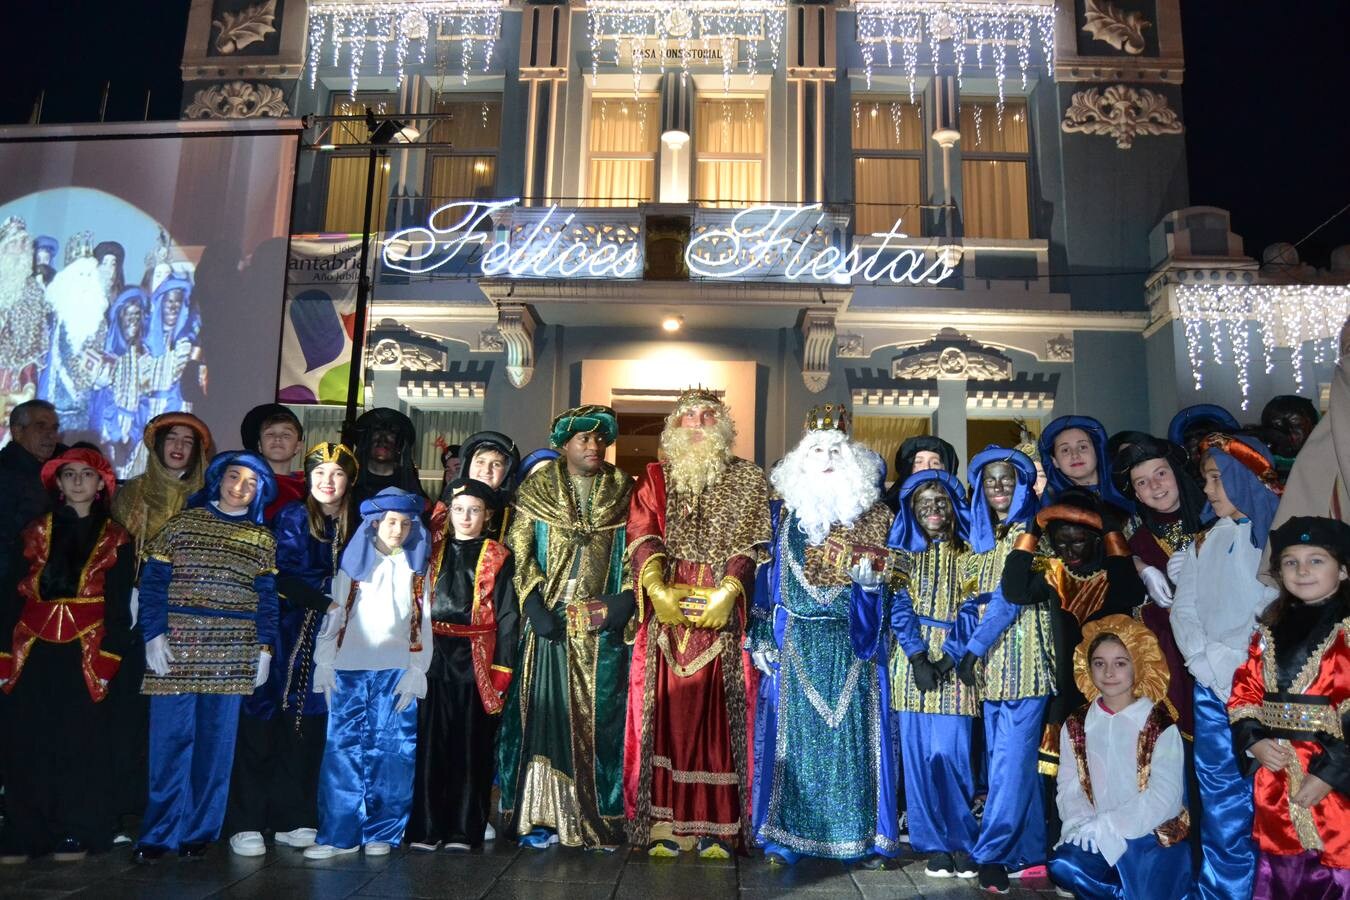 COLINDRES Los Reyes posaron con sus pajes delante del Ayuntamiento. Fotos: Irene Bajo